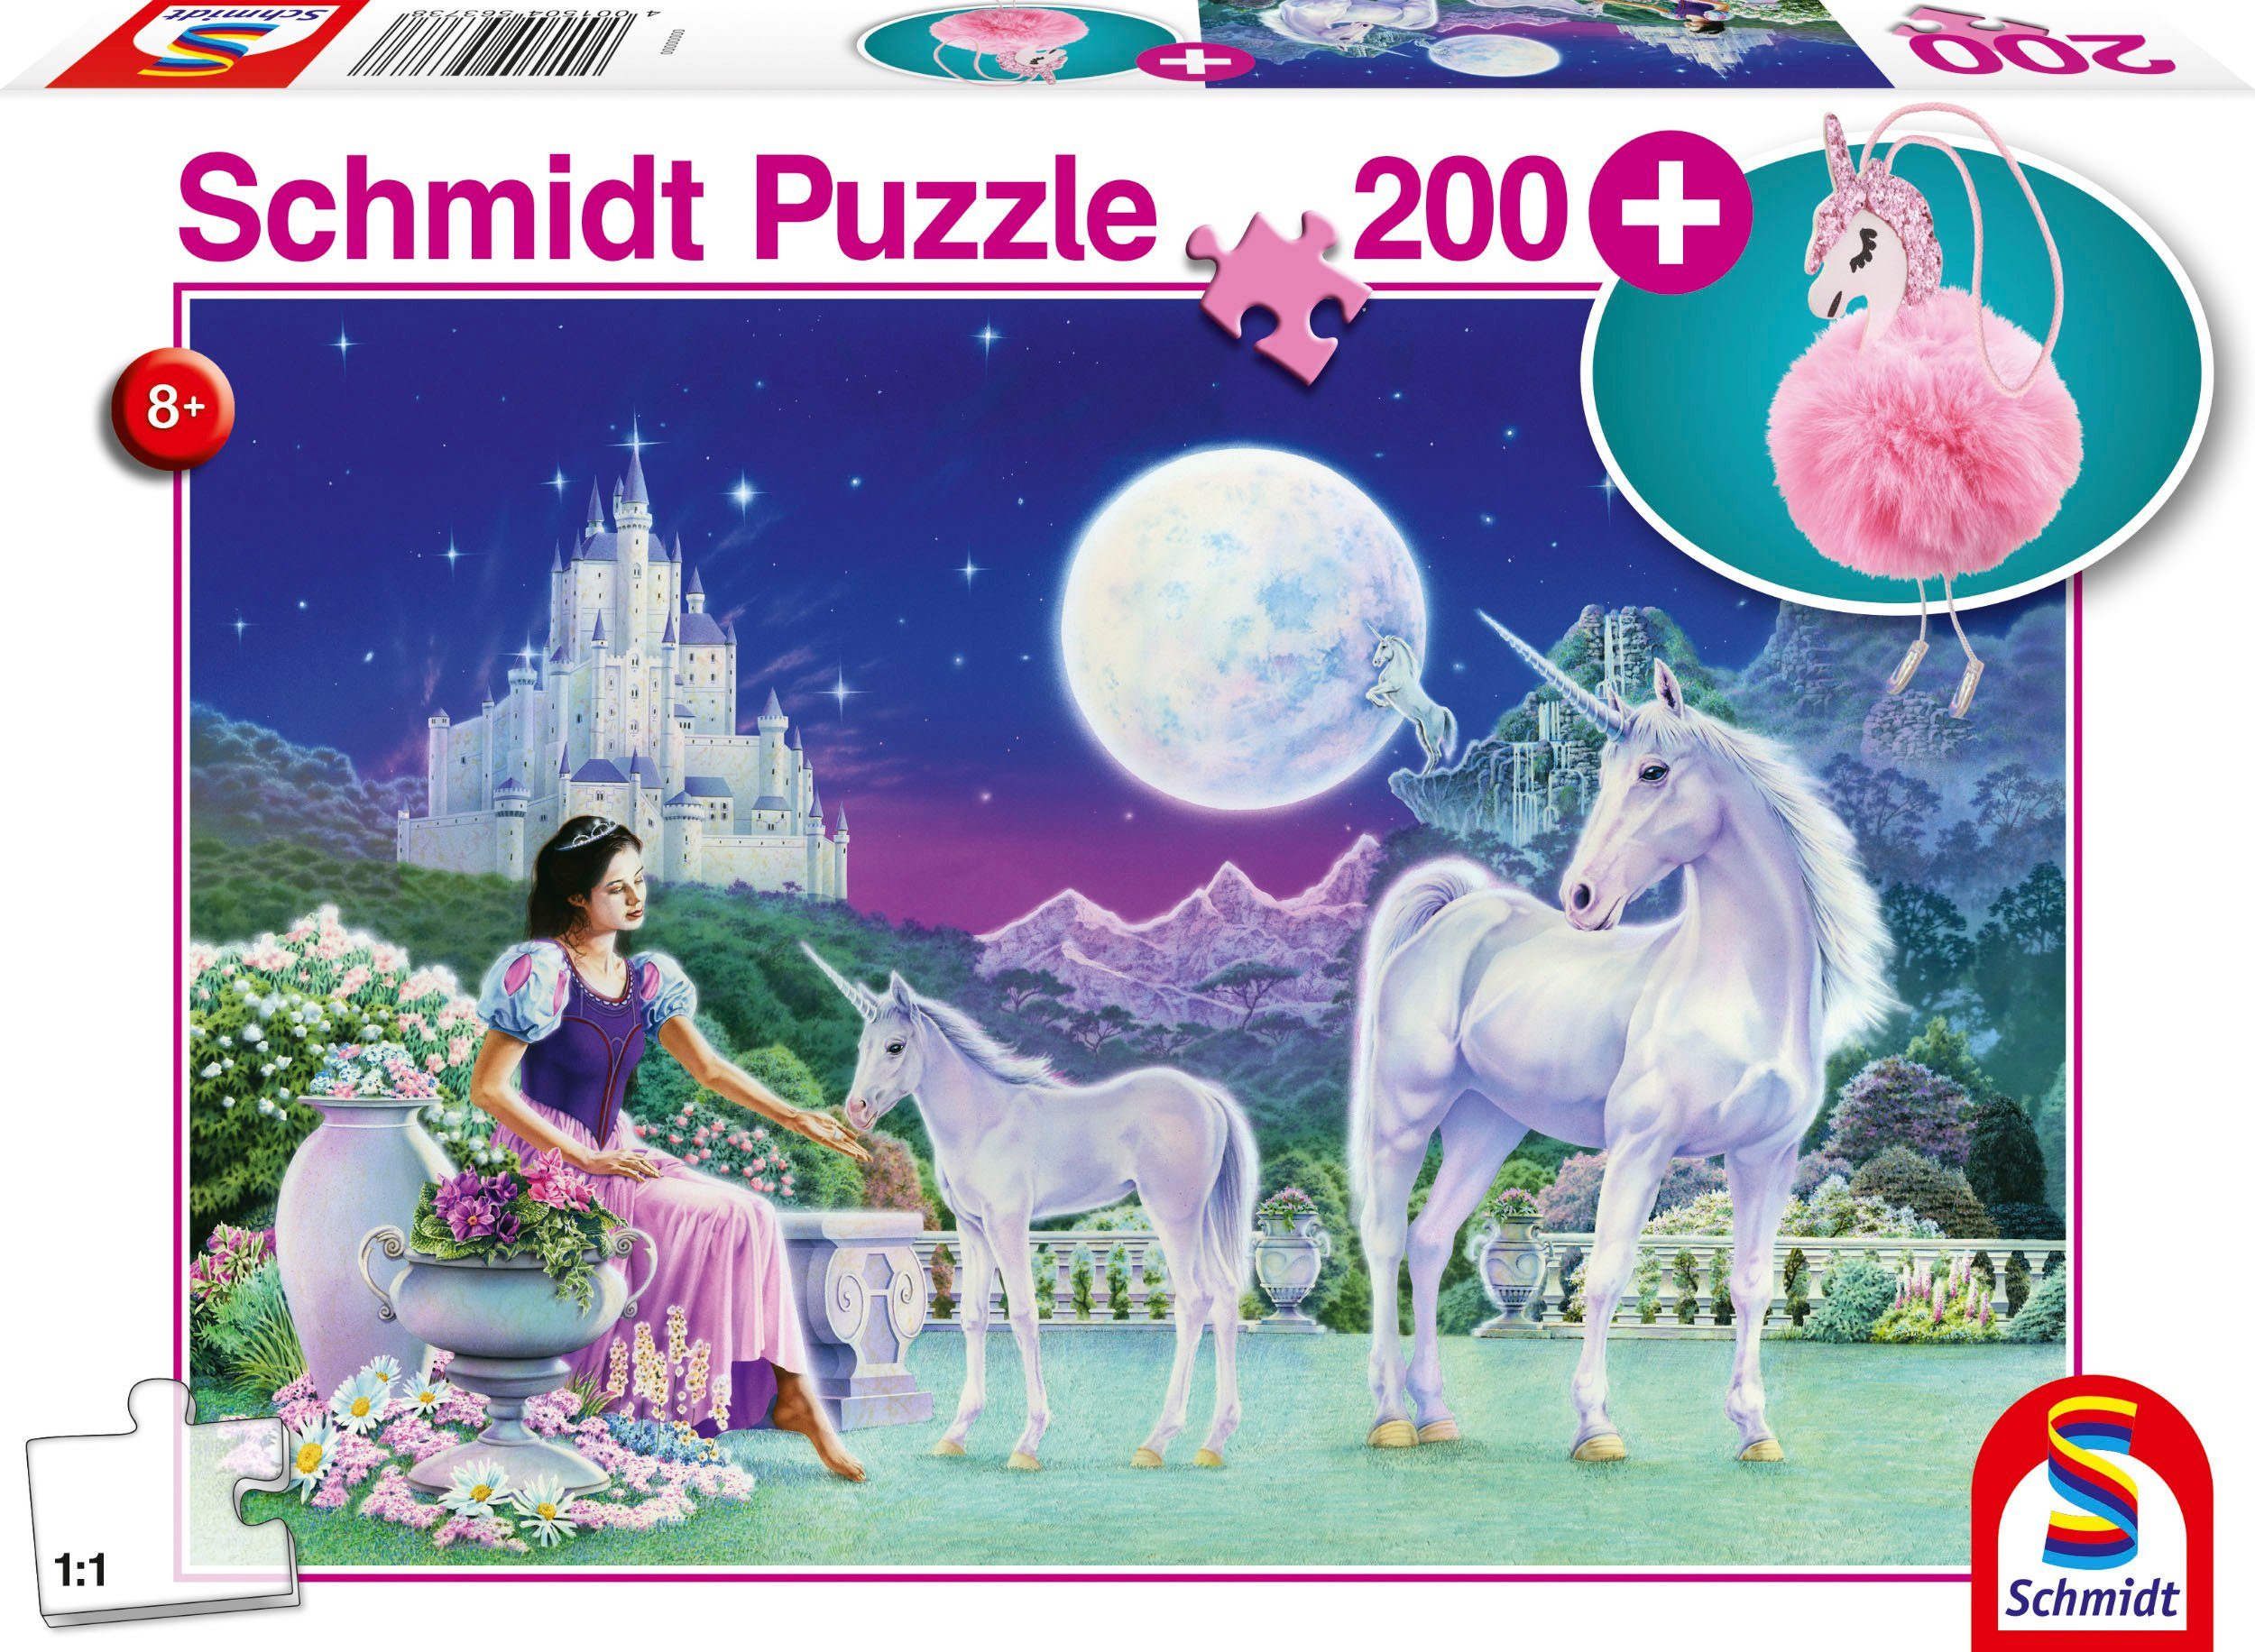 Puzzleteile, Made 200 Schmidt Puzzle in mit Spiele Puschel-Anhänger; Europe Einhorn,